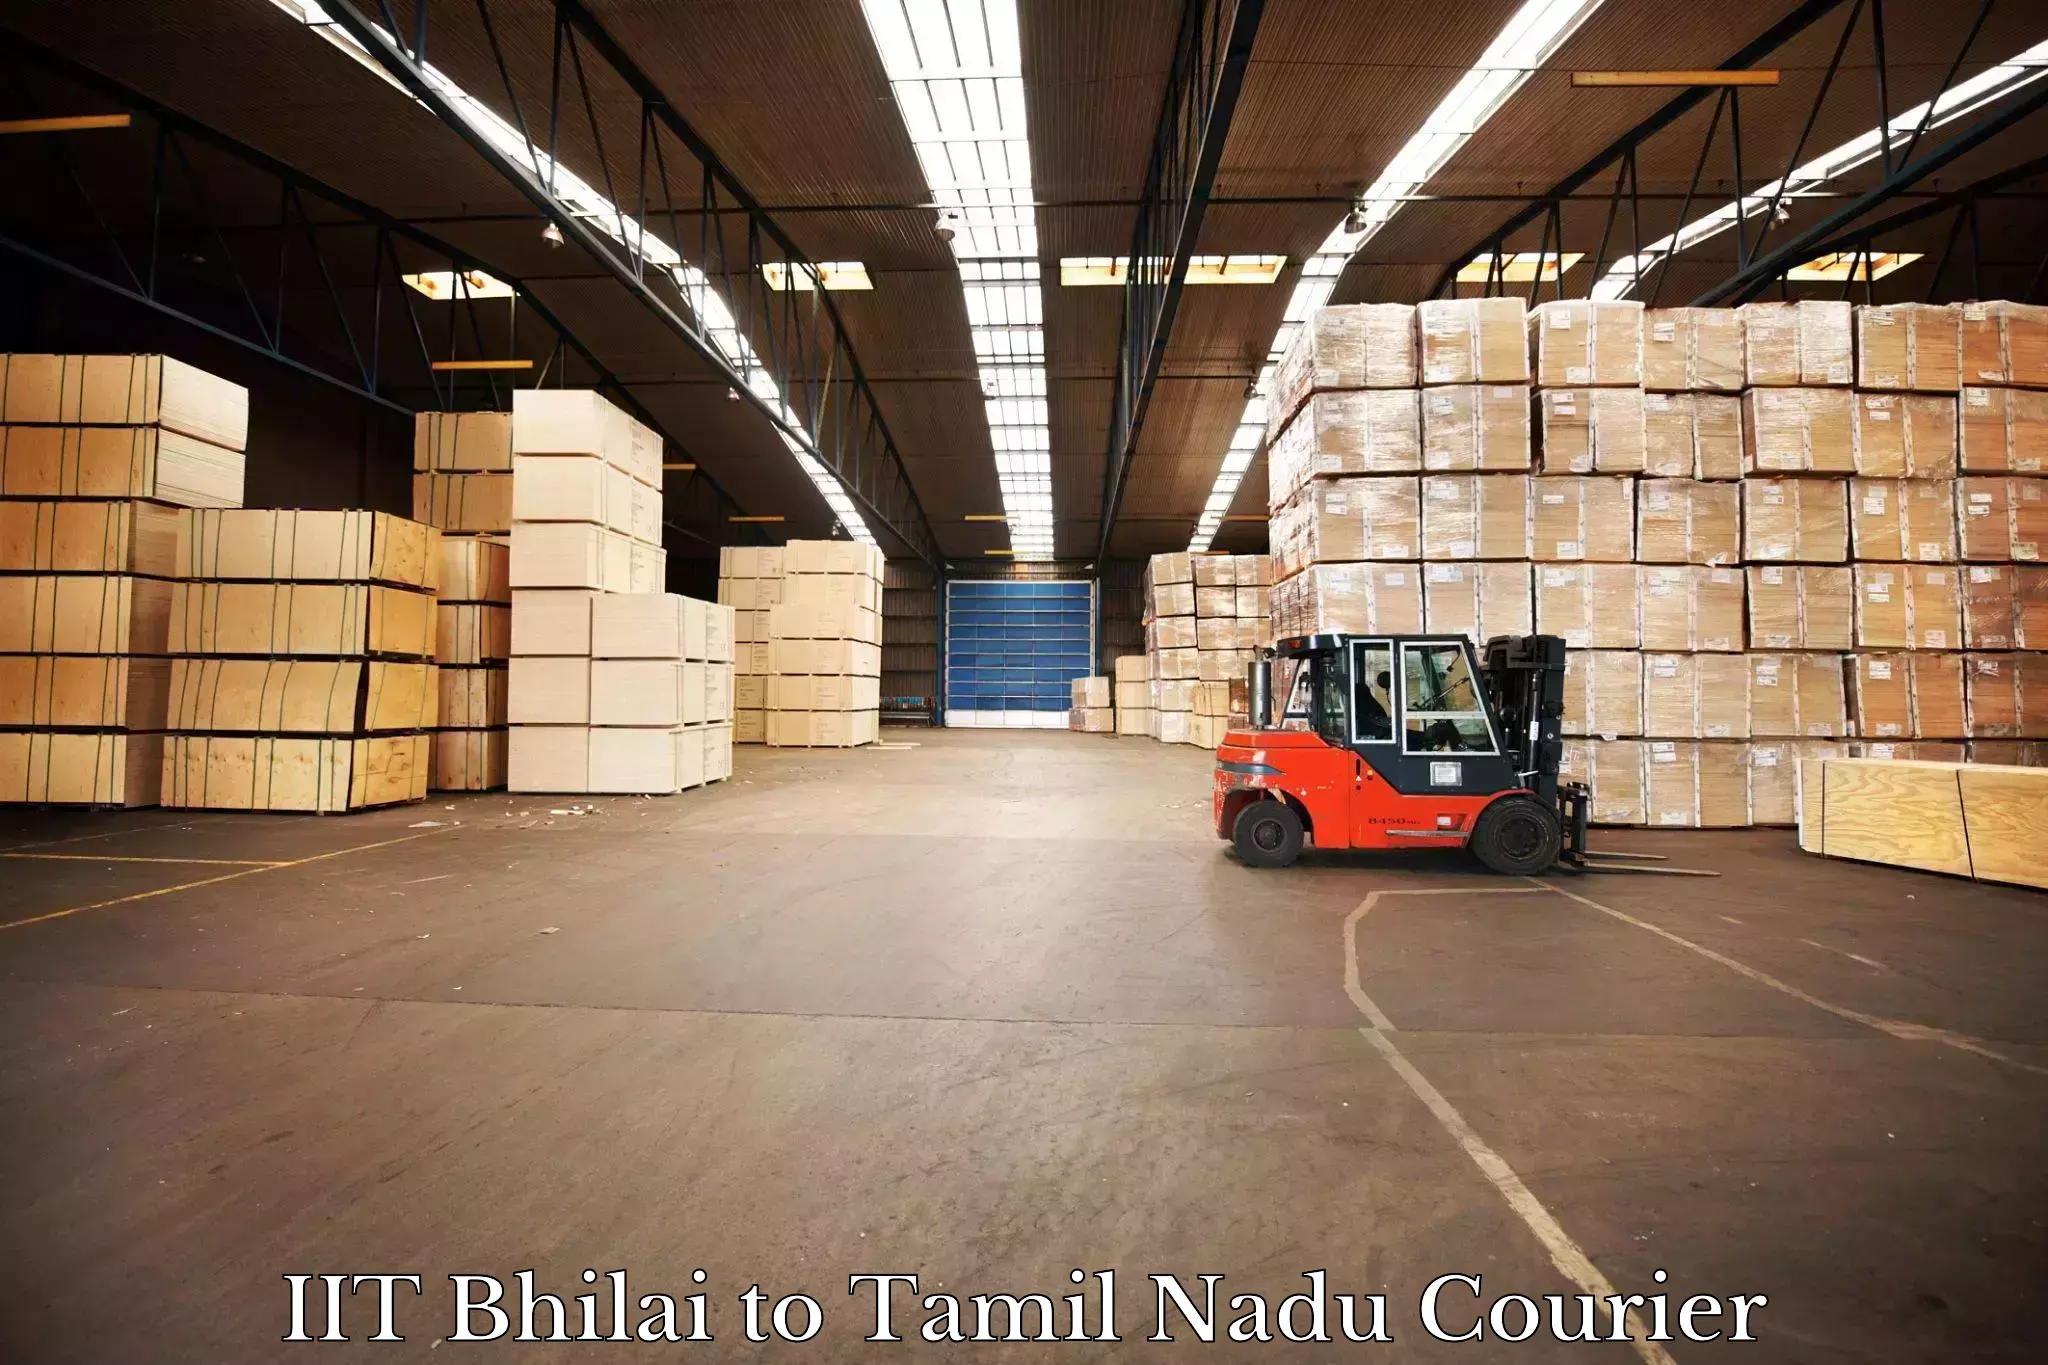 Express logistics providers IIT Bhilai to Tamil Nadu